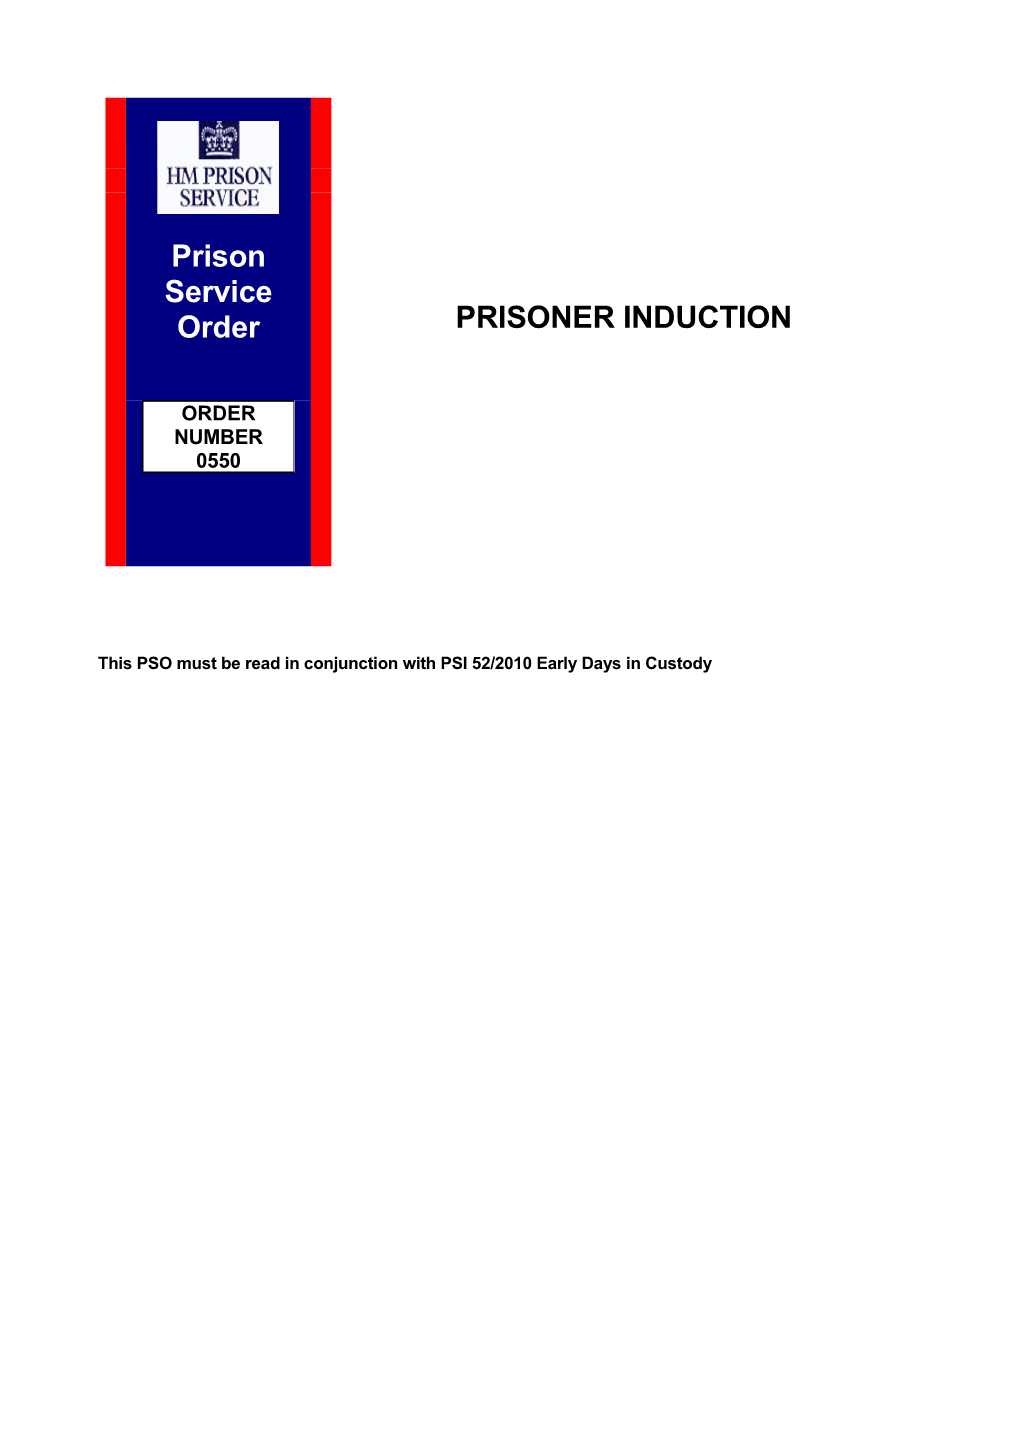 PSO 0550 - Prisoner Induction